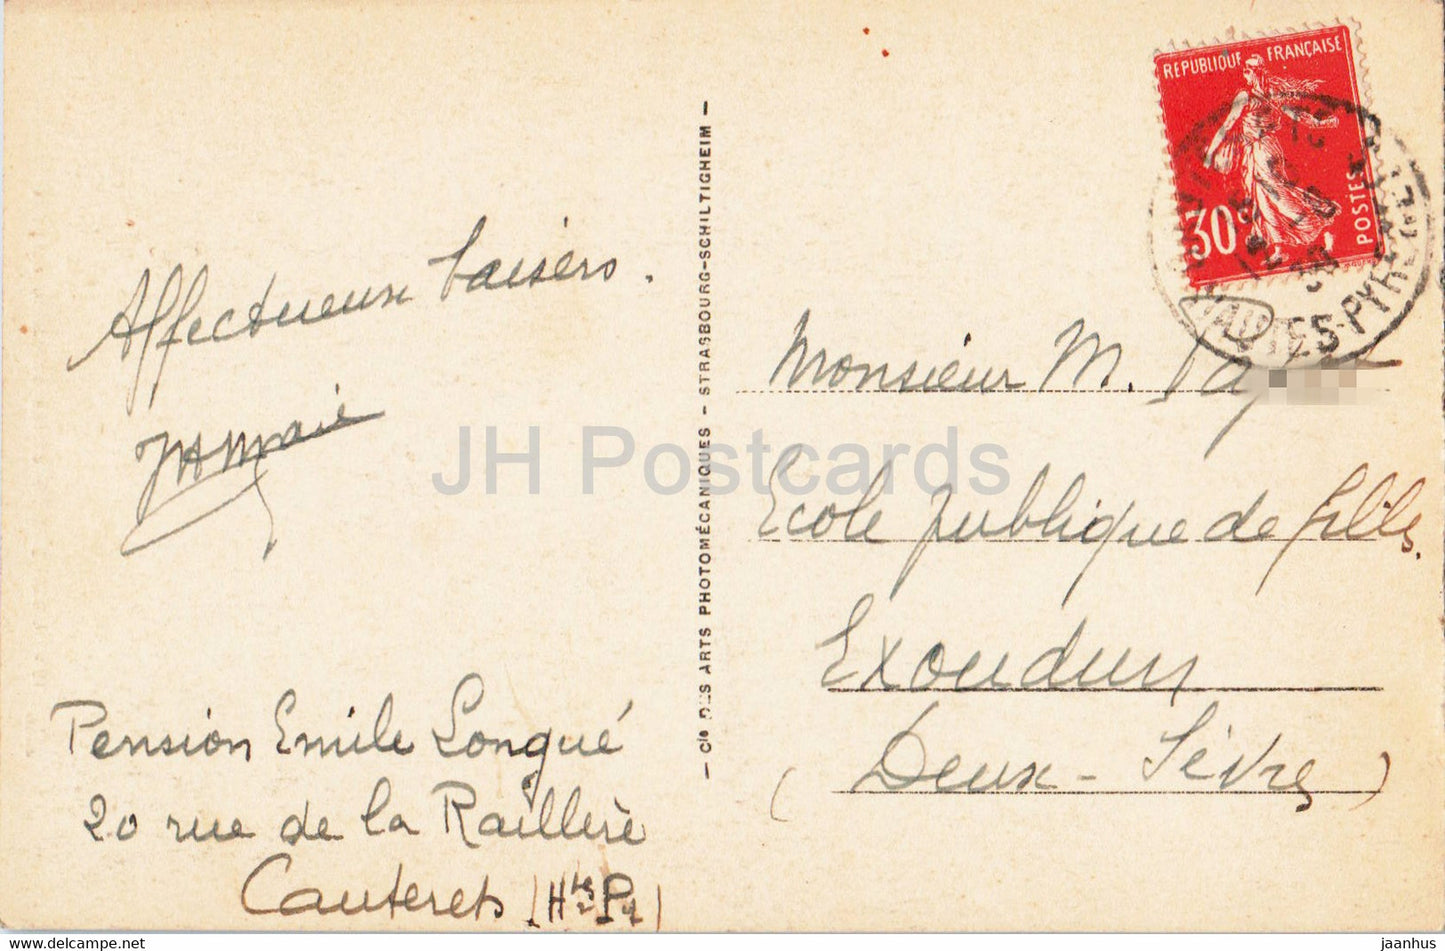 Cauterets - et les sommets neigeux - 194 - alte Postkarte - 1938 - Frankreich - gebraucht